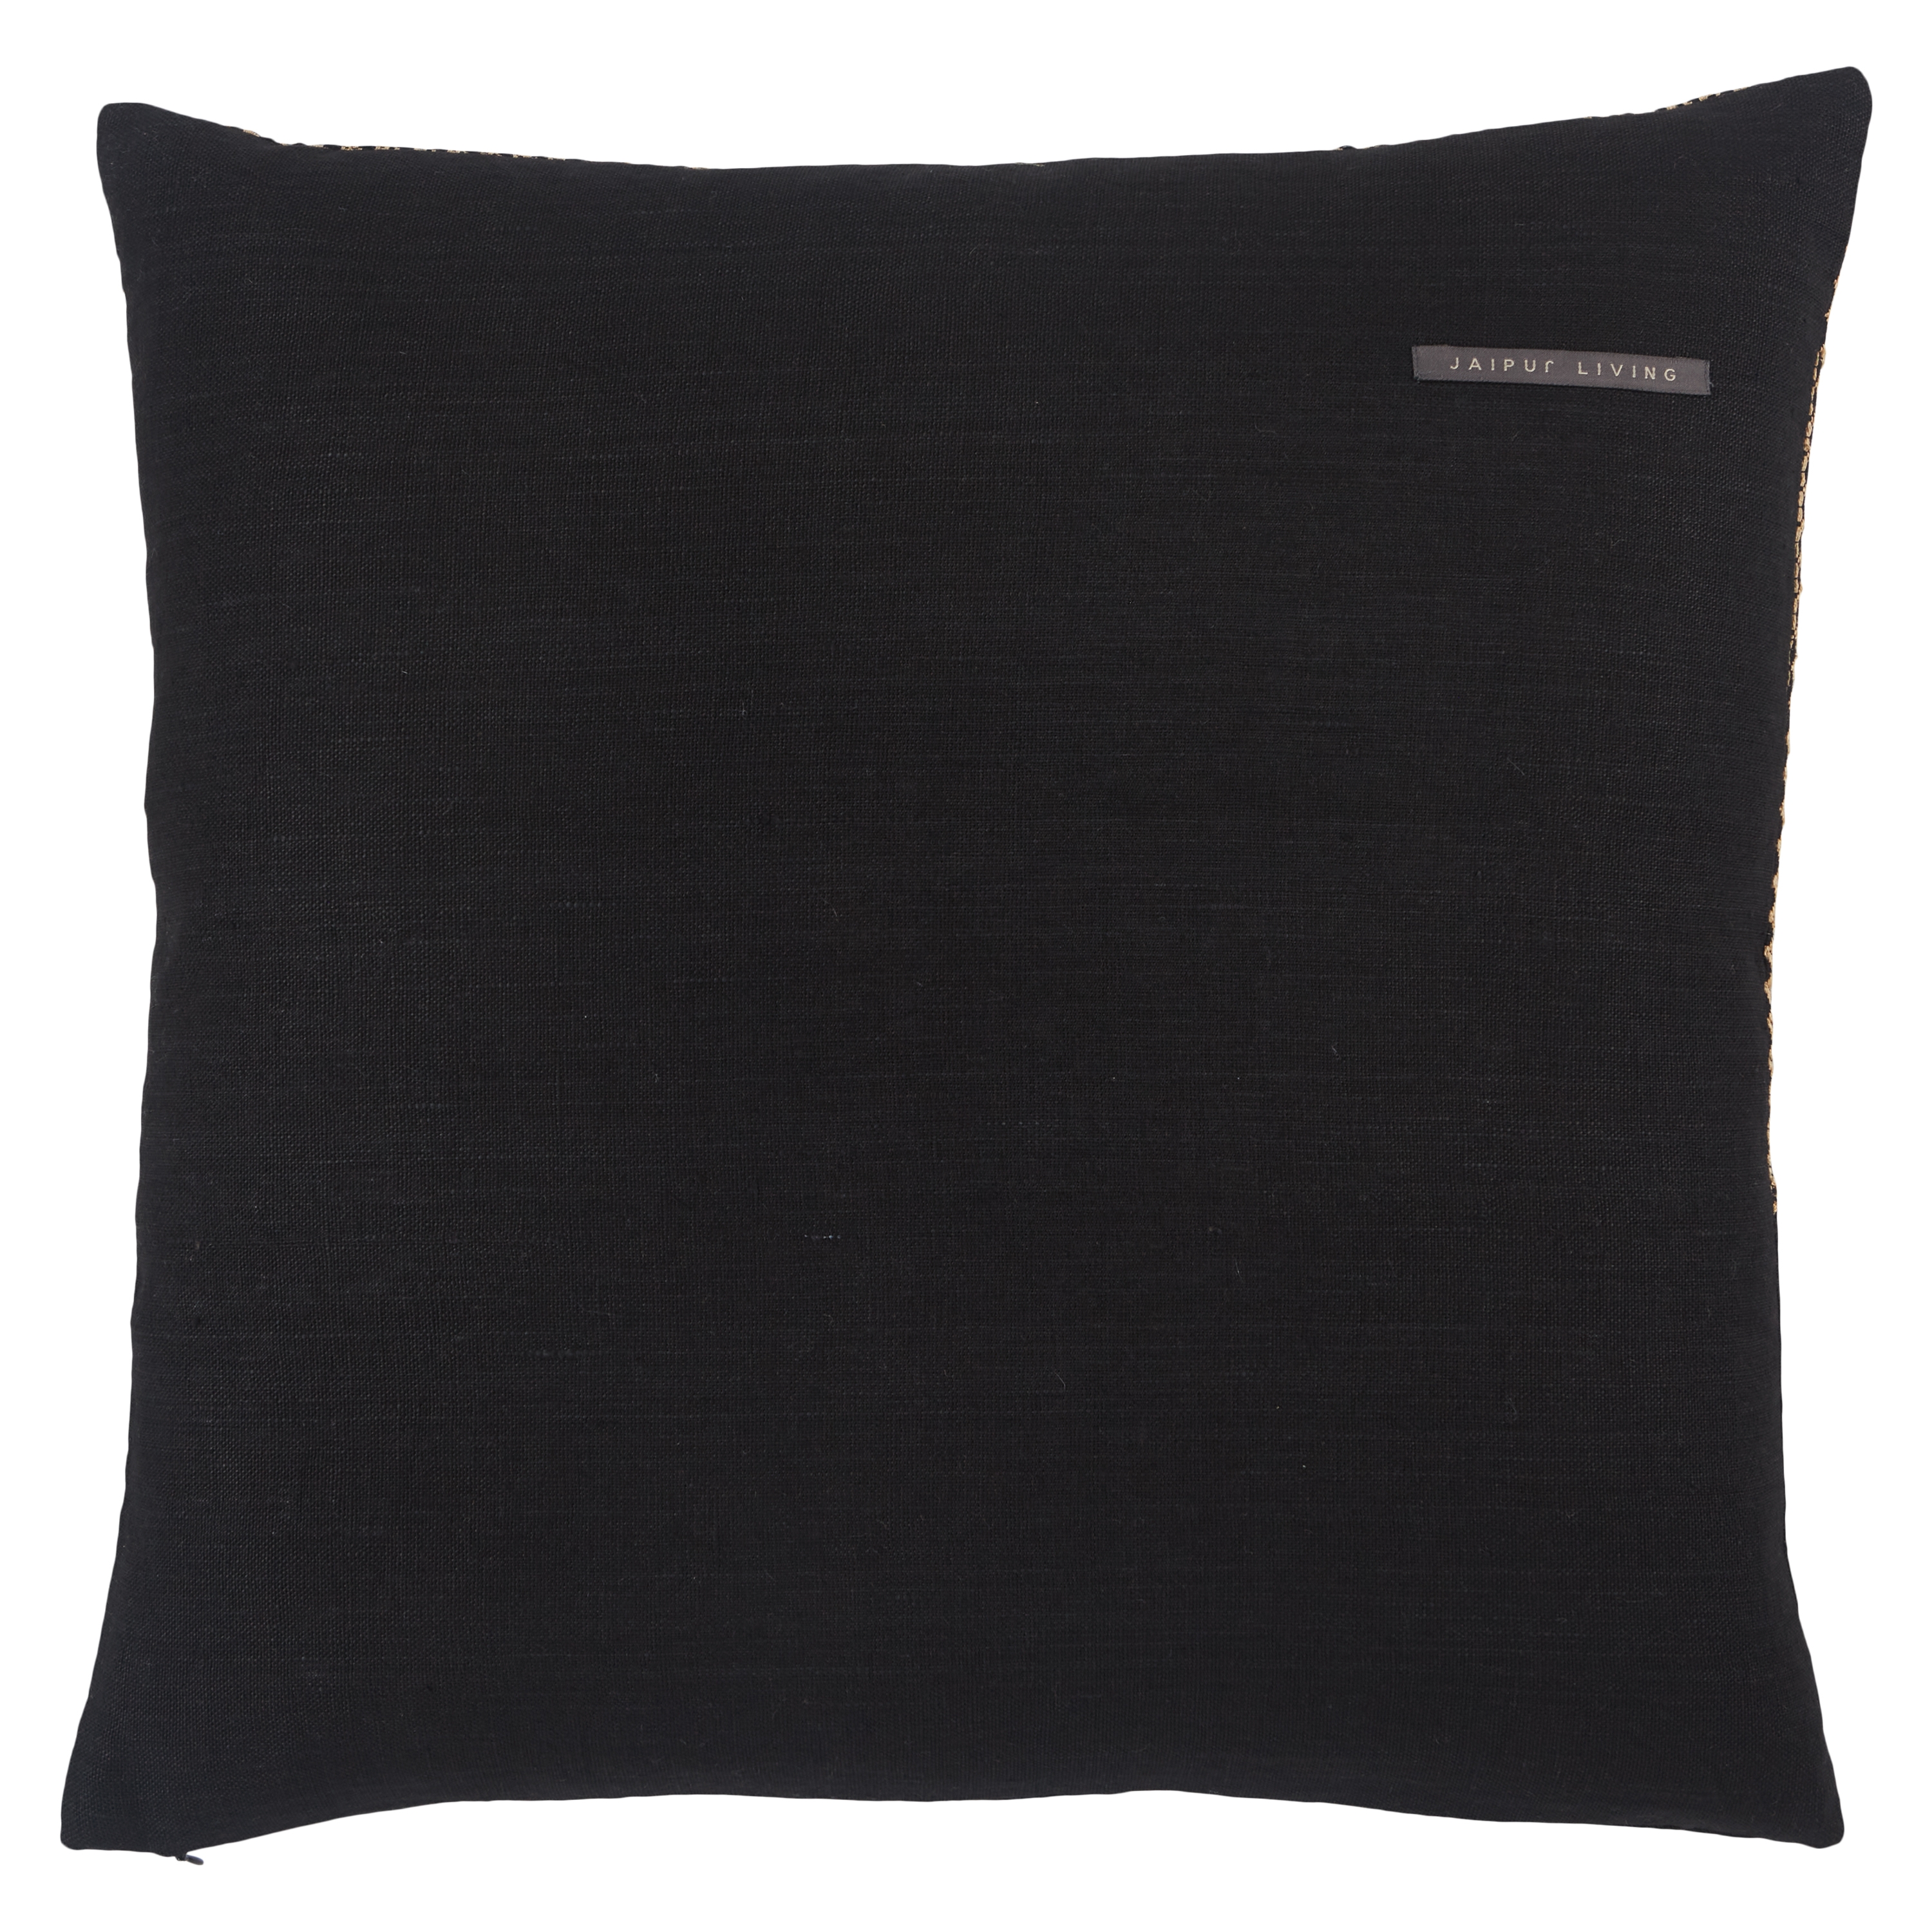 Sila Pillow, Almond & Black, 22" x 22" - Image 1